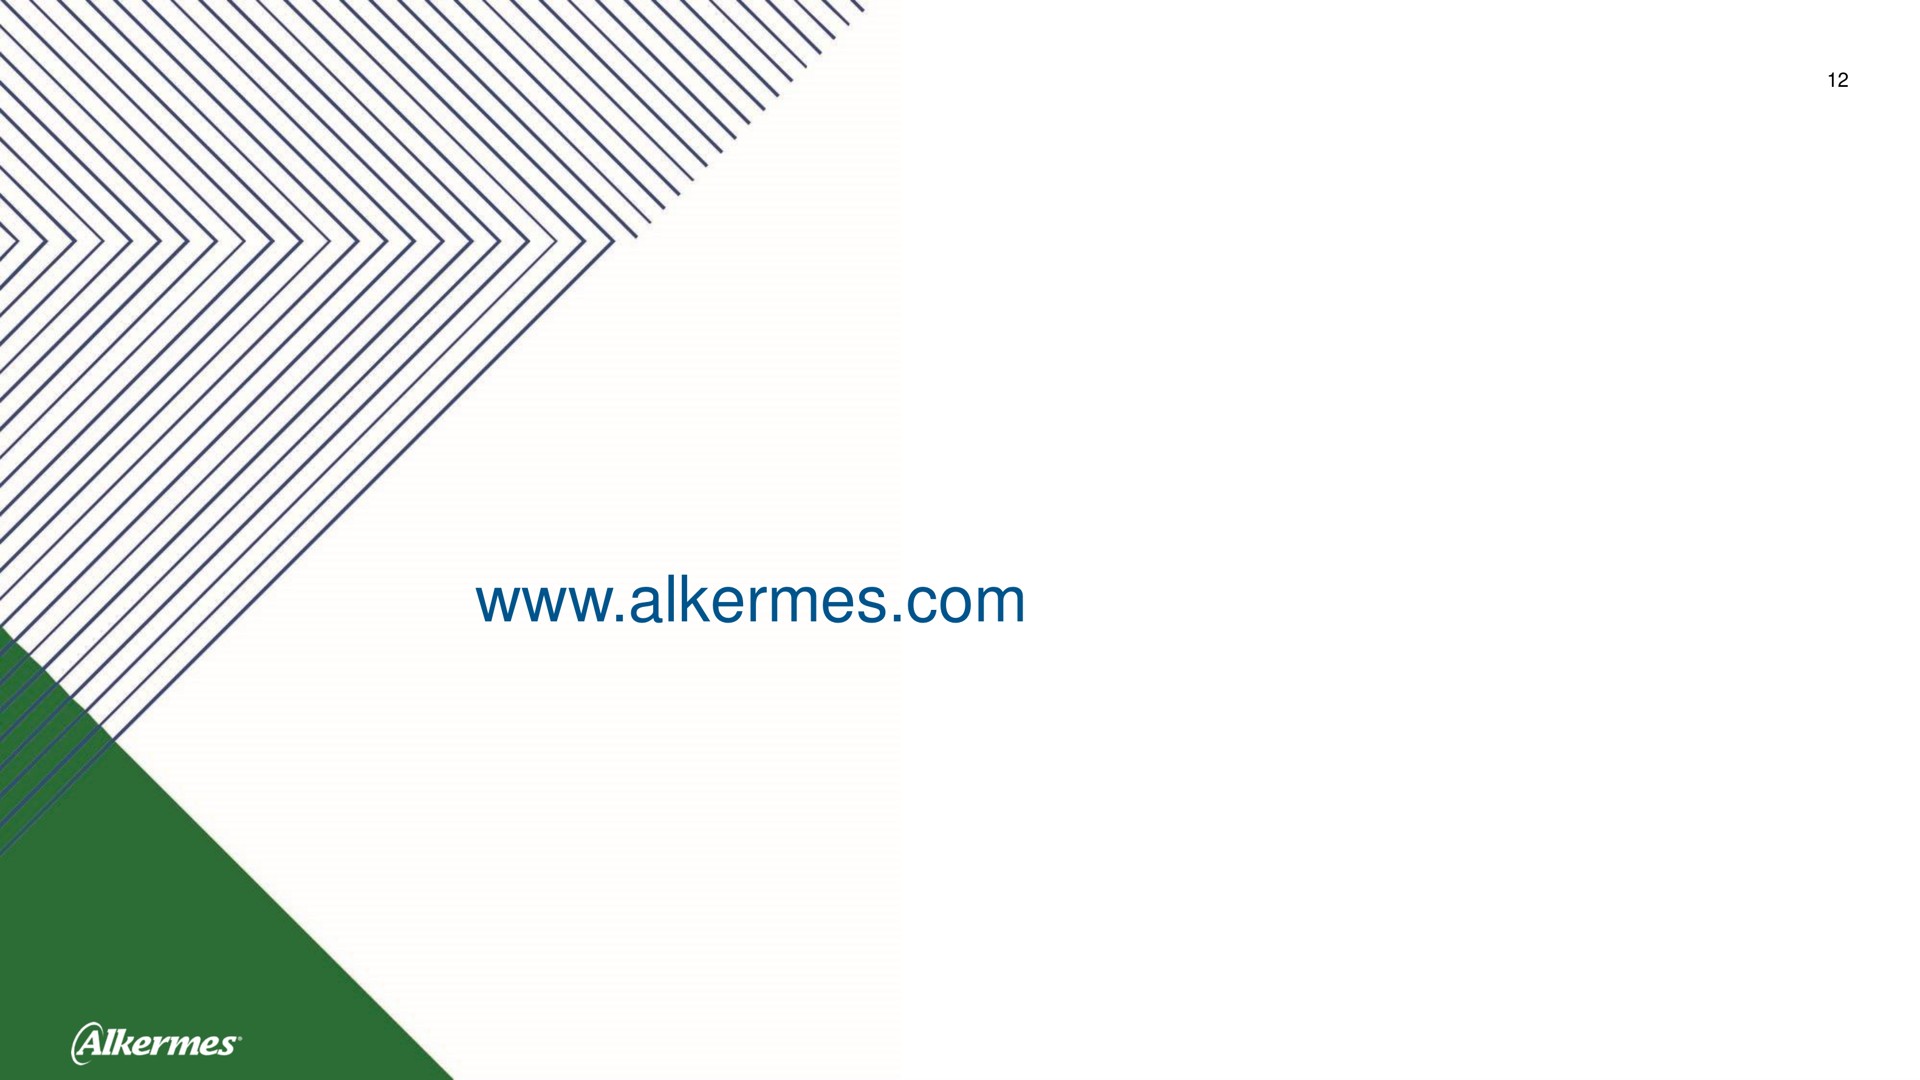 alkermes | Alkermes